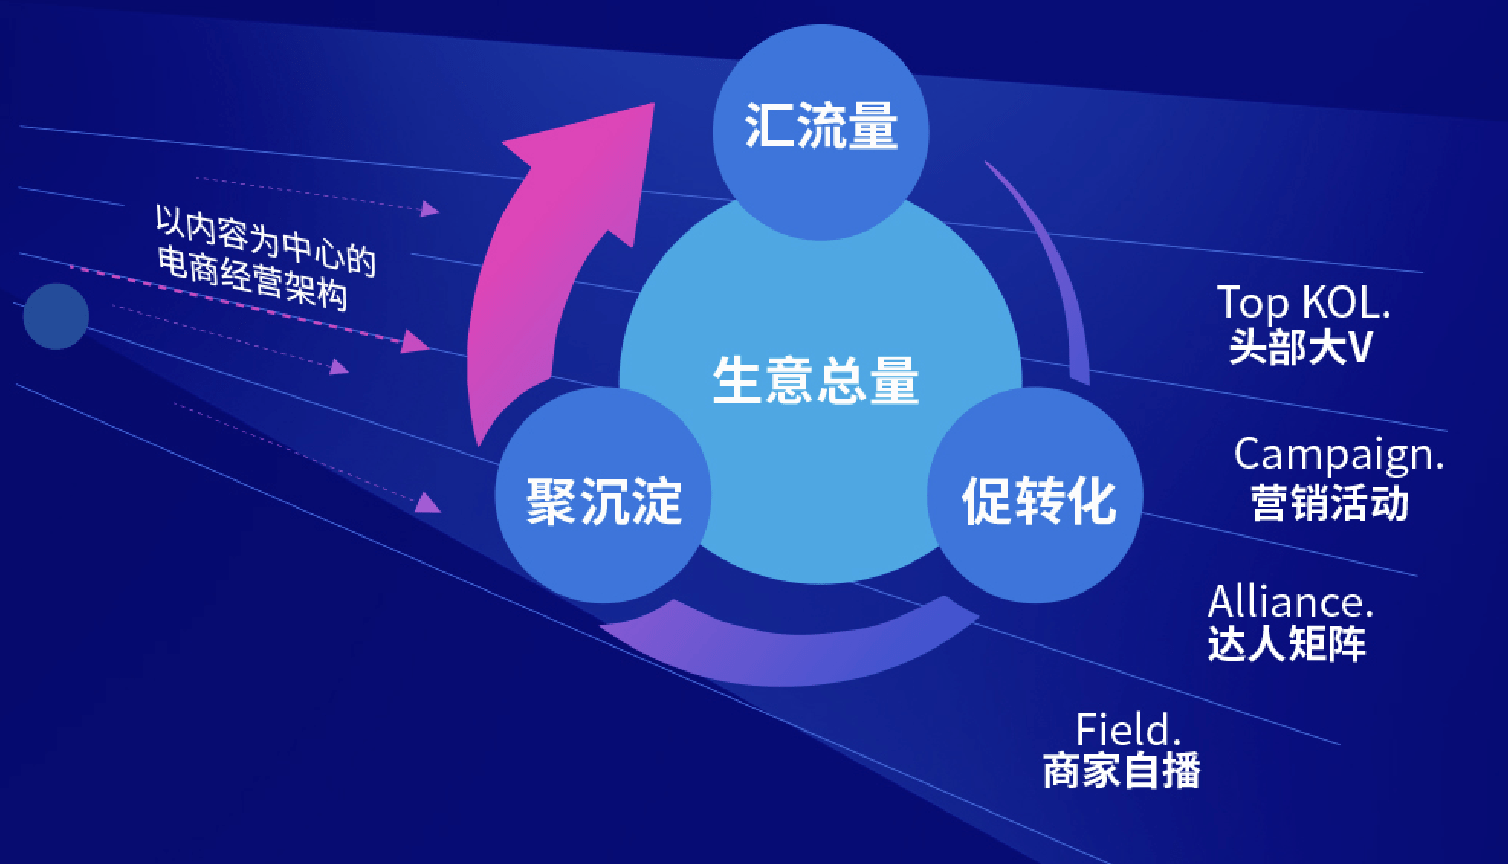 亿博抖音电商官方学习平台全面升级激发生意新动能(图2)